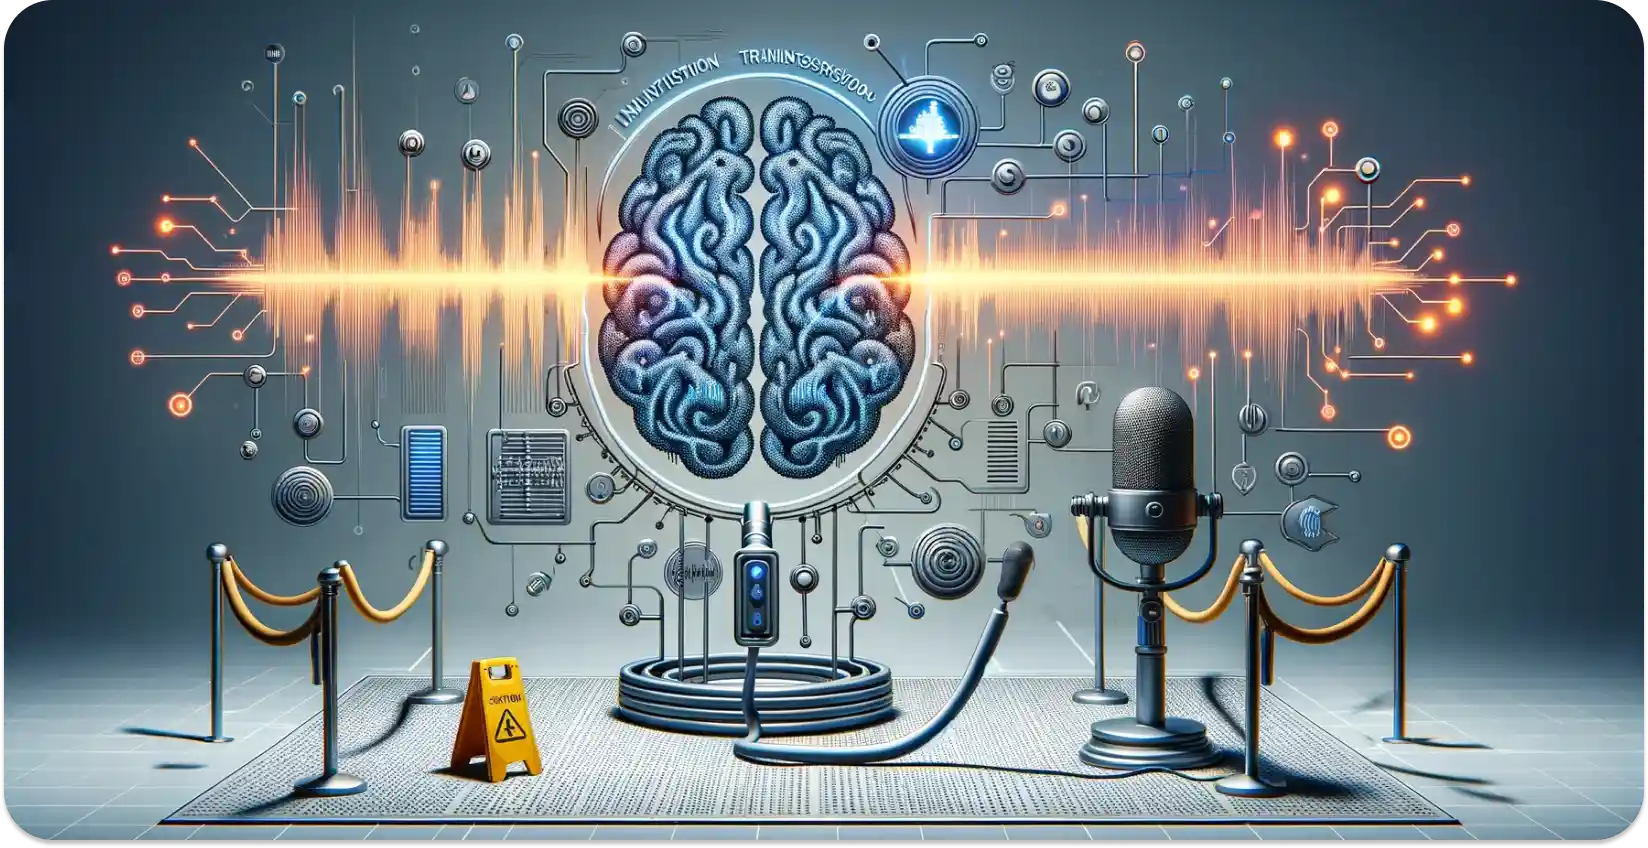 Arte conceptual de un cerebro AI procesando ondas sonoras en datos, simbolizando la transcripción de audio.